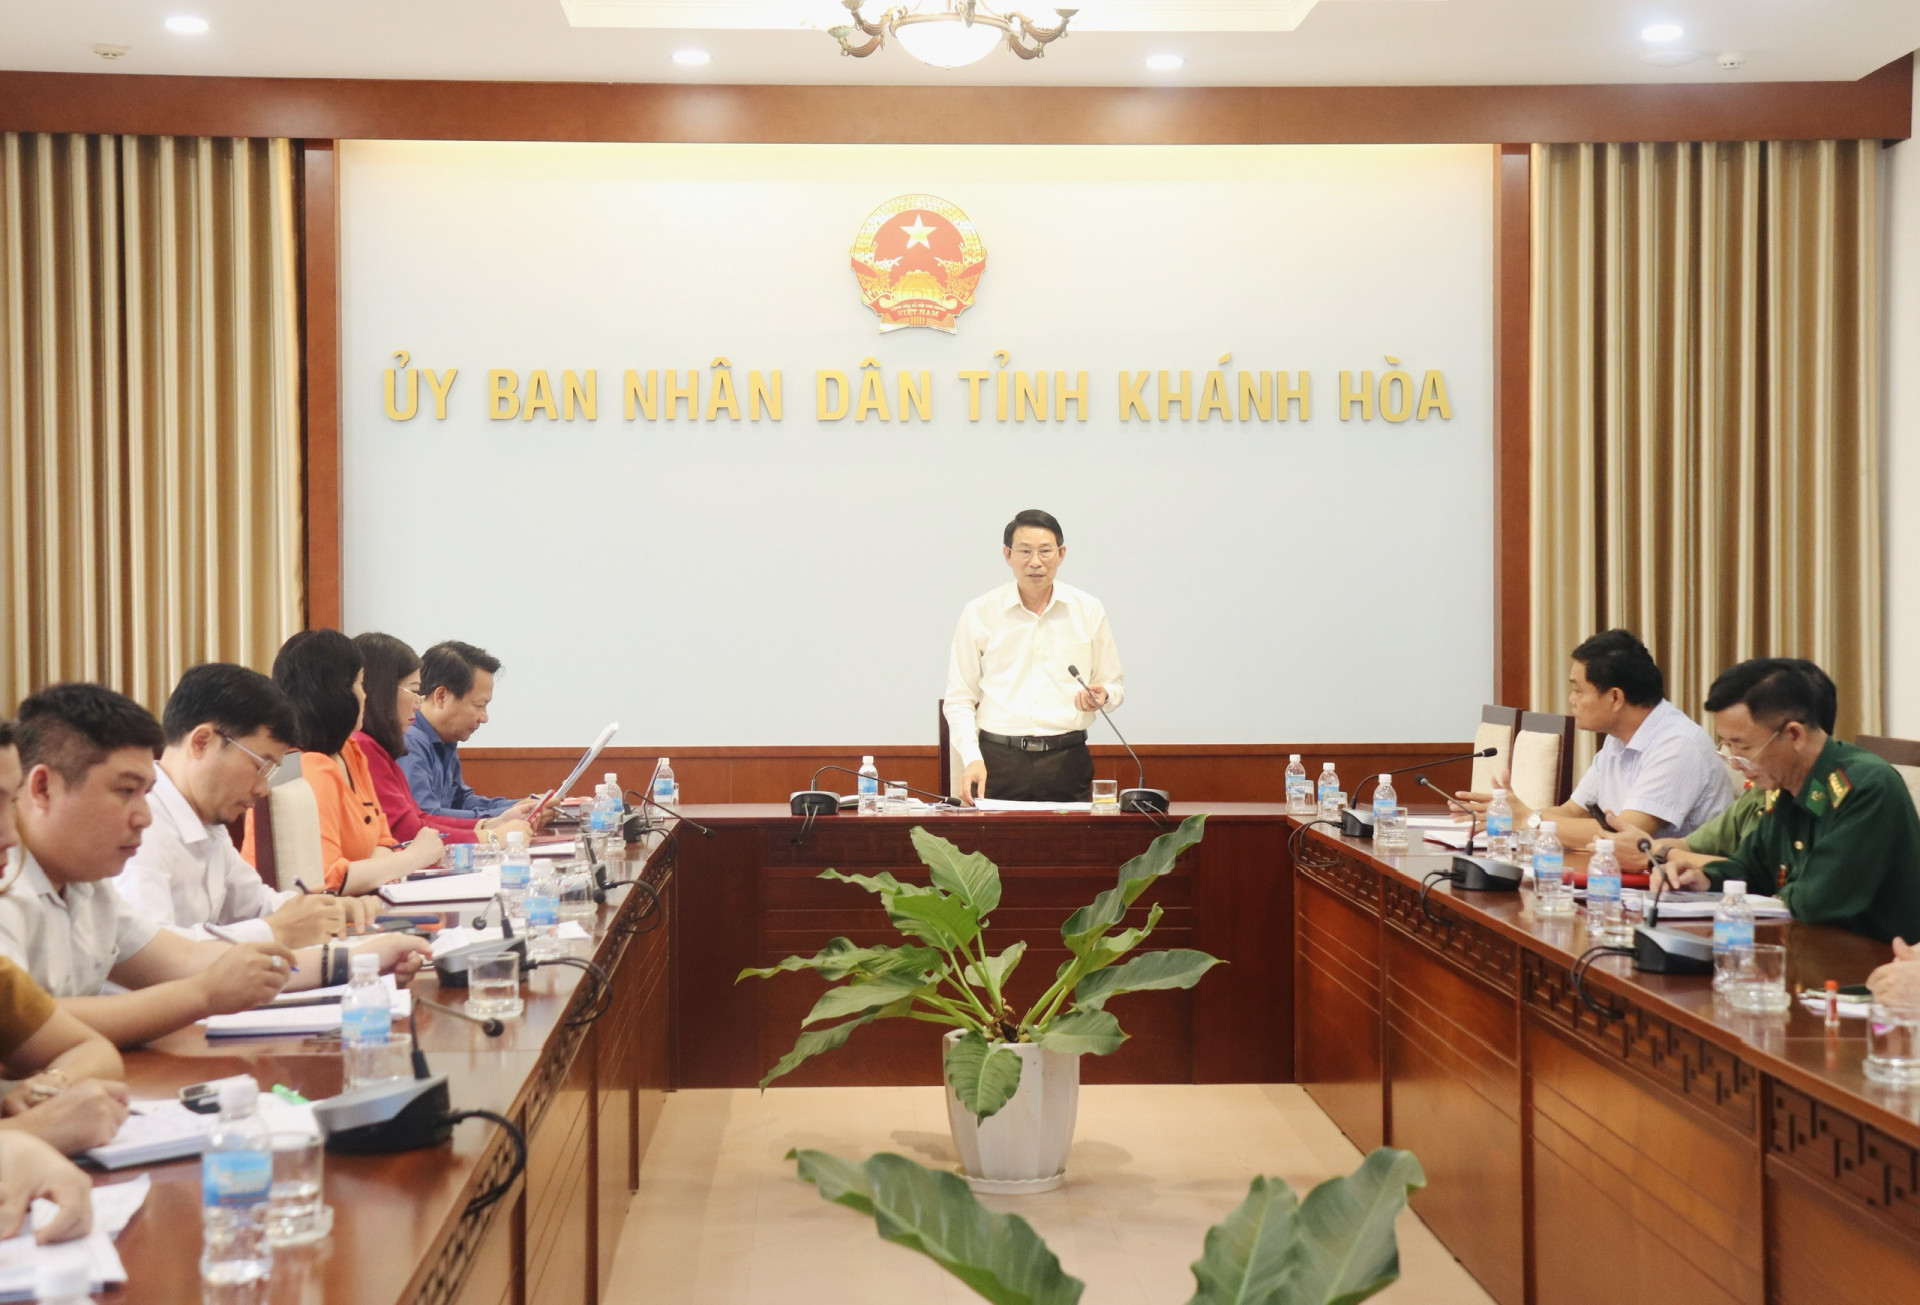 Phó Chủ tịch UBND tỉnh Đinh Văn Thiệu kết luận cuộc họp